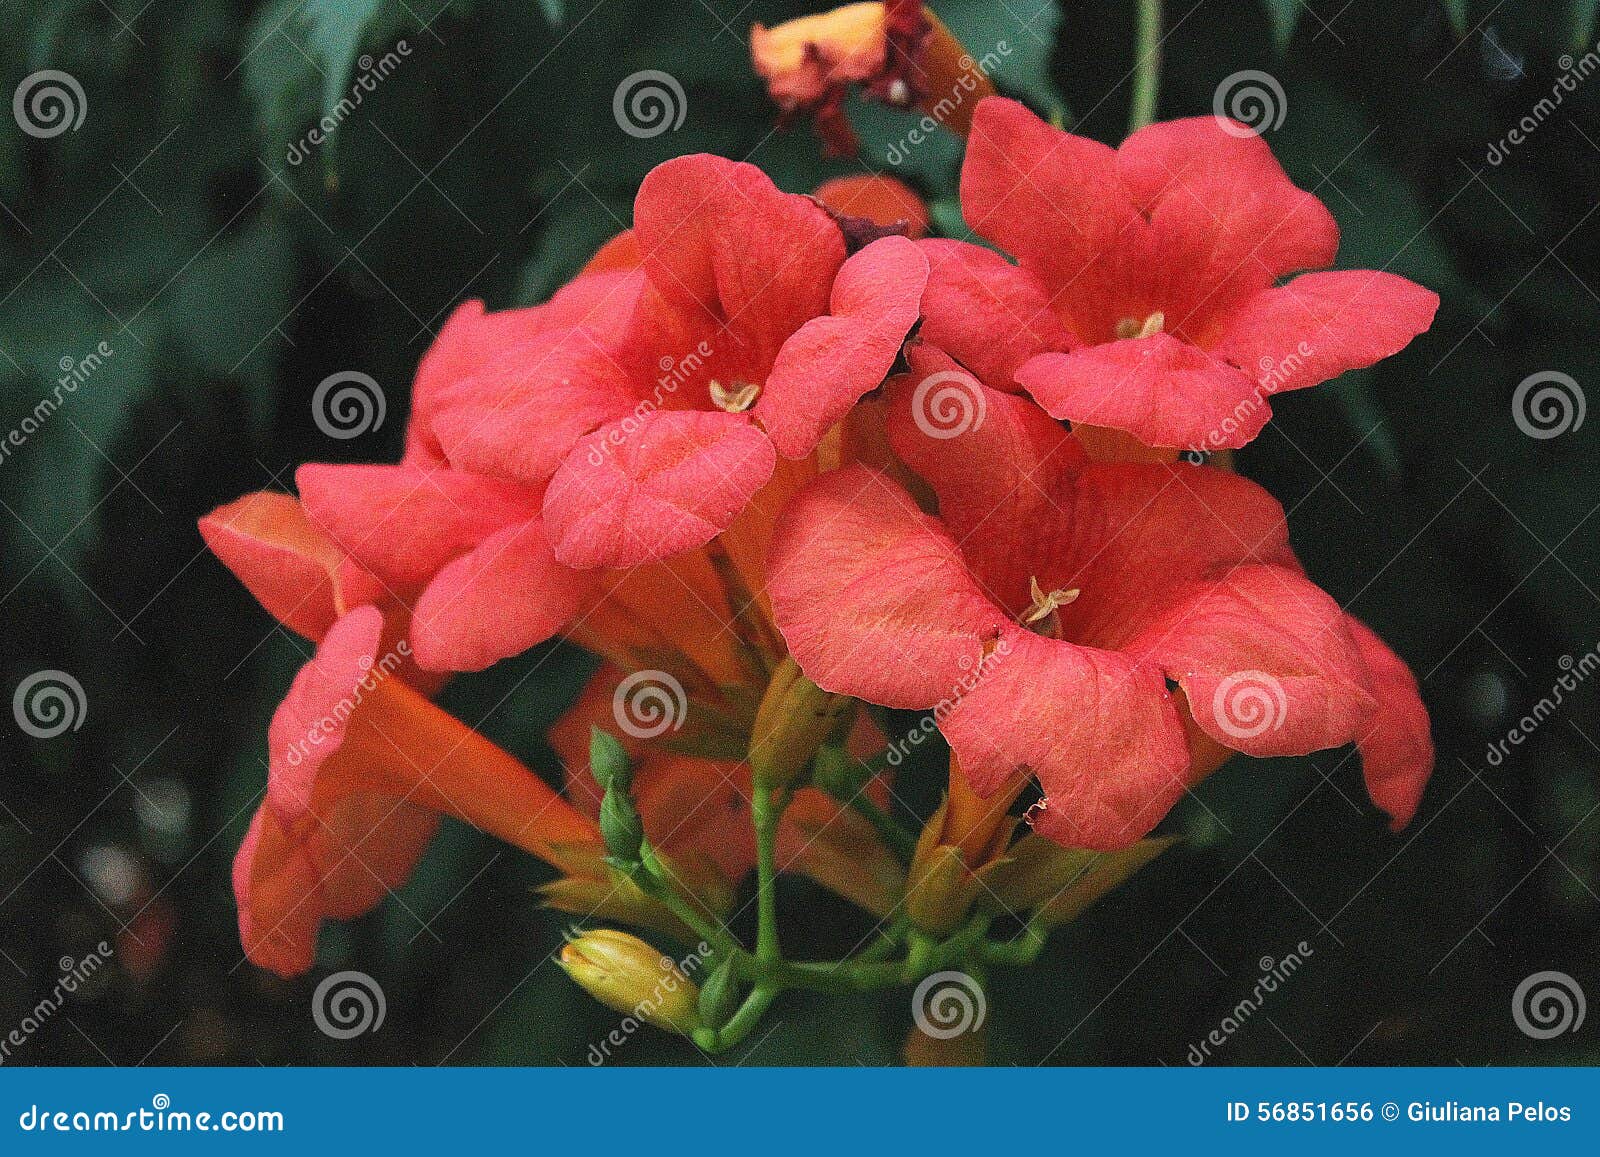 red flowers - bignonia unguis -cati